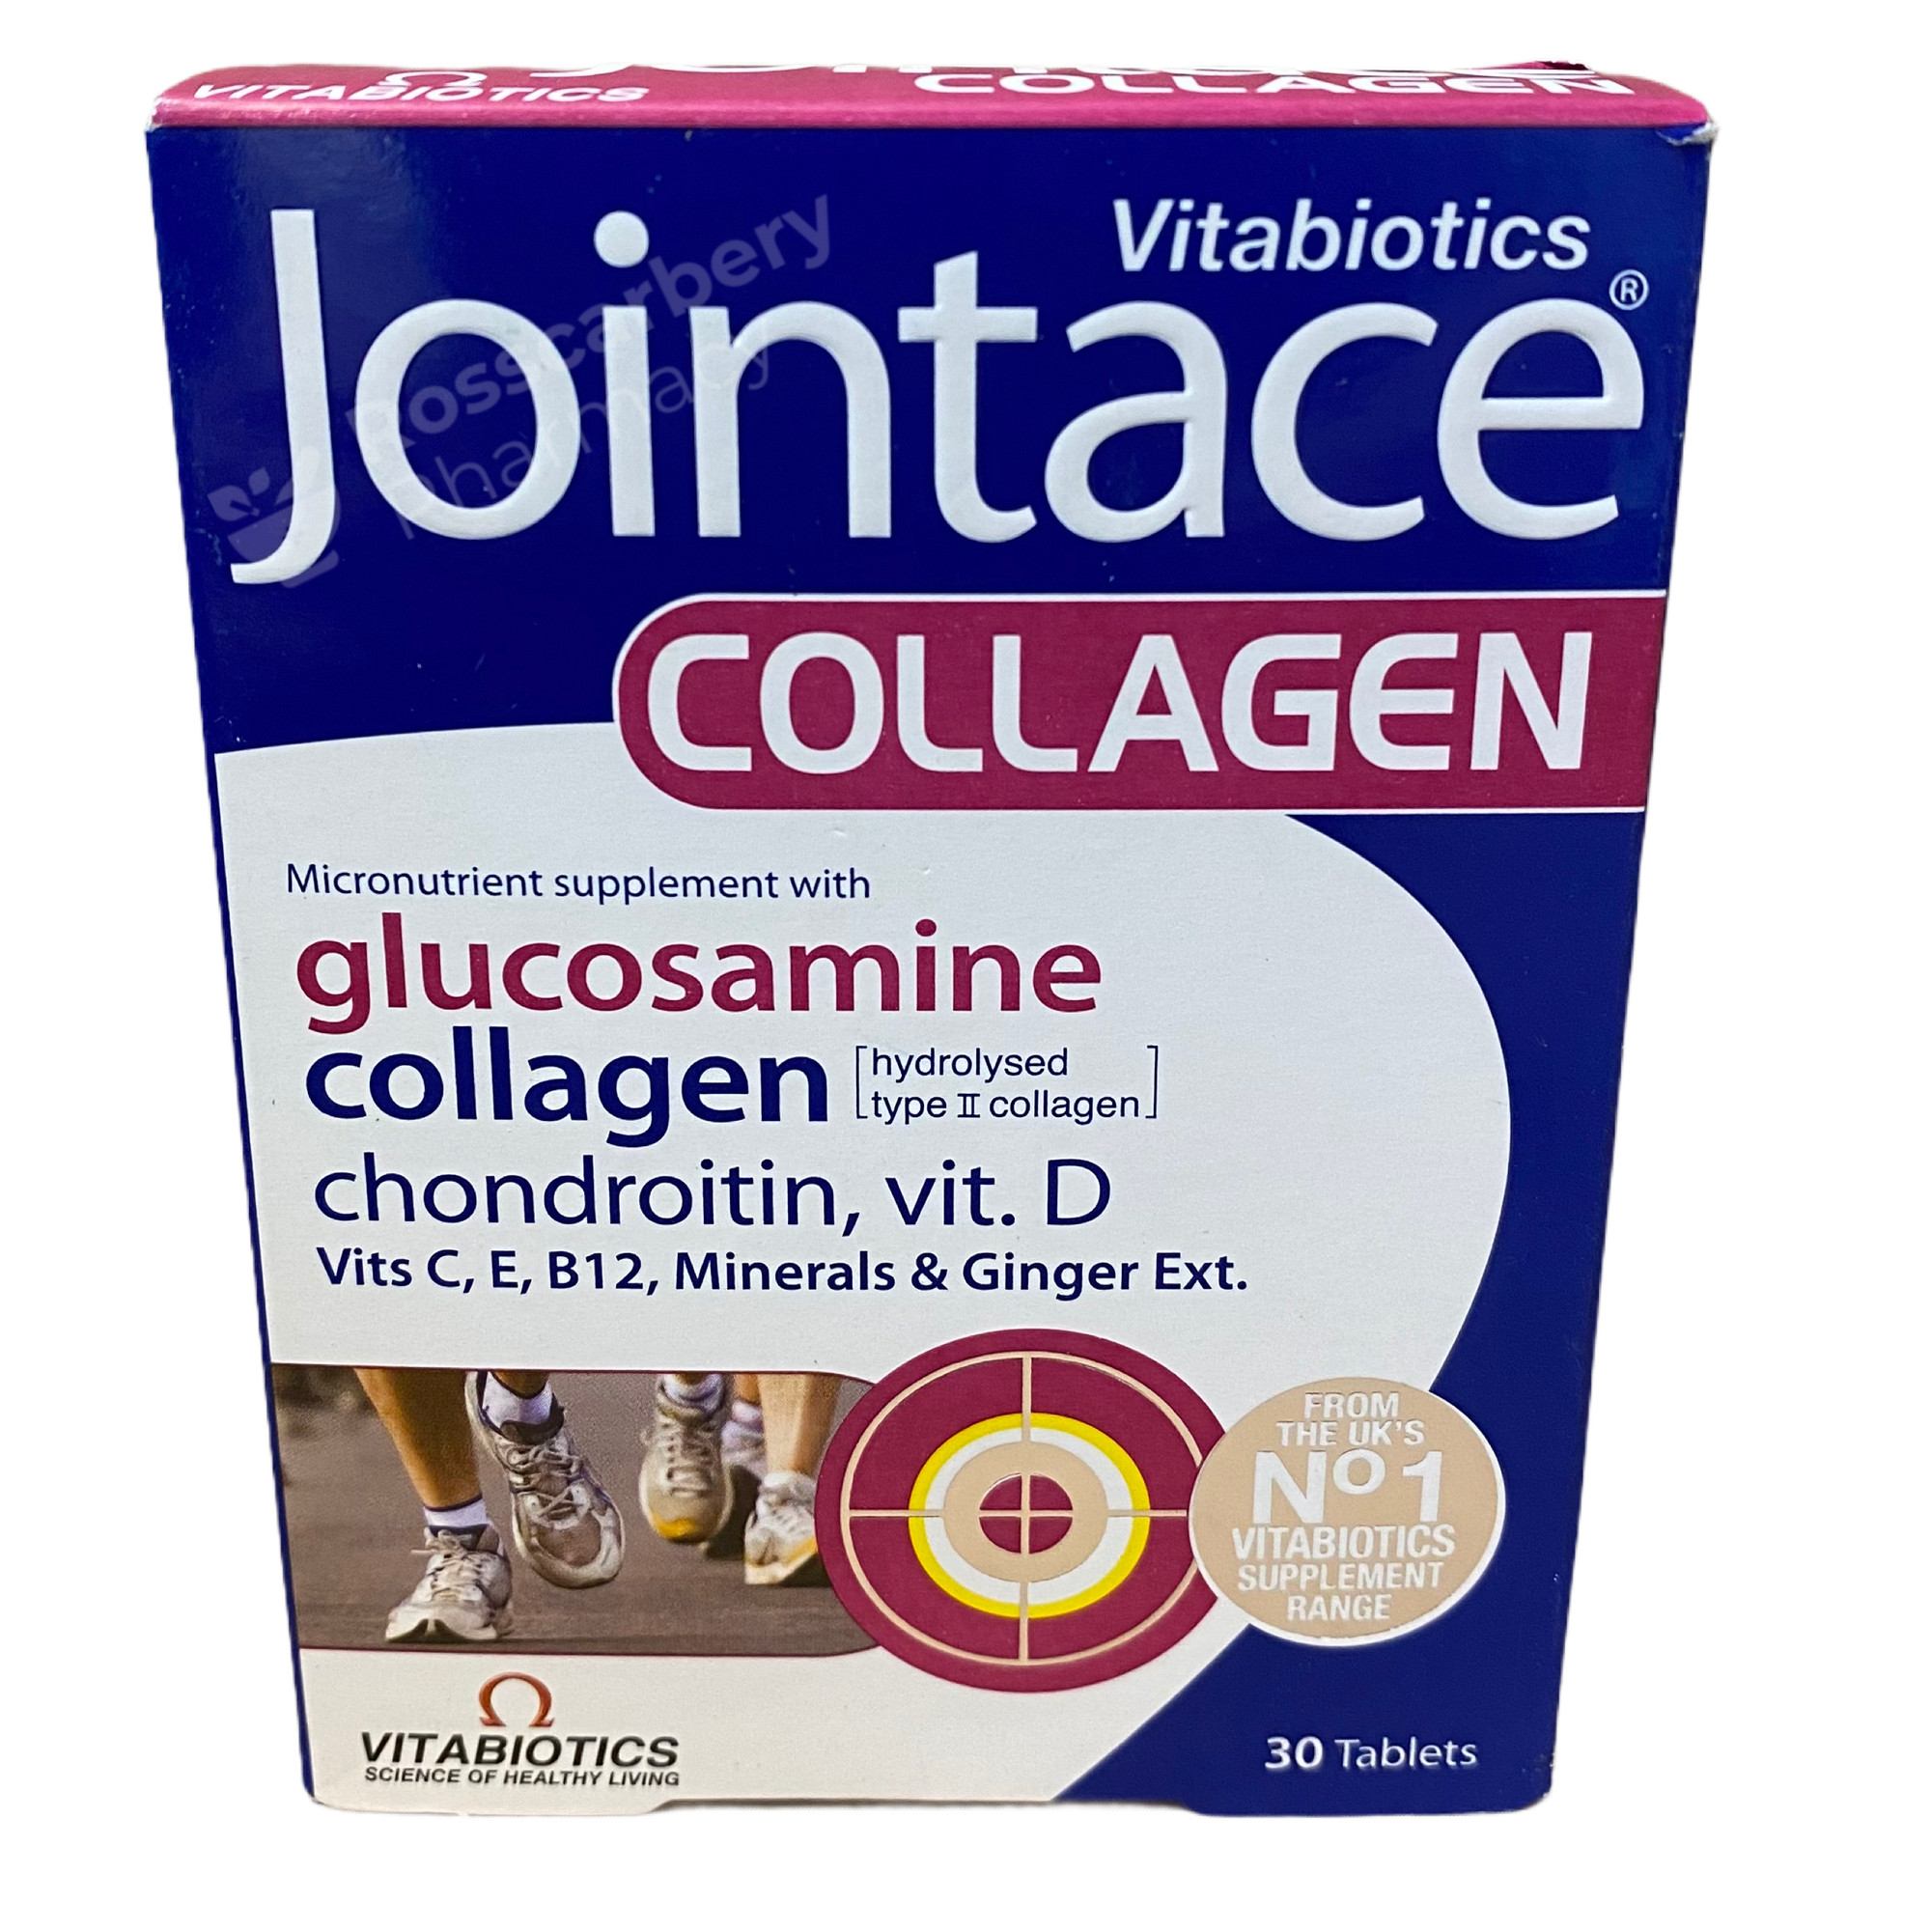 Jointace Collagen Vitabiotics